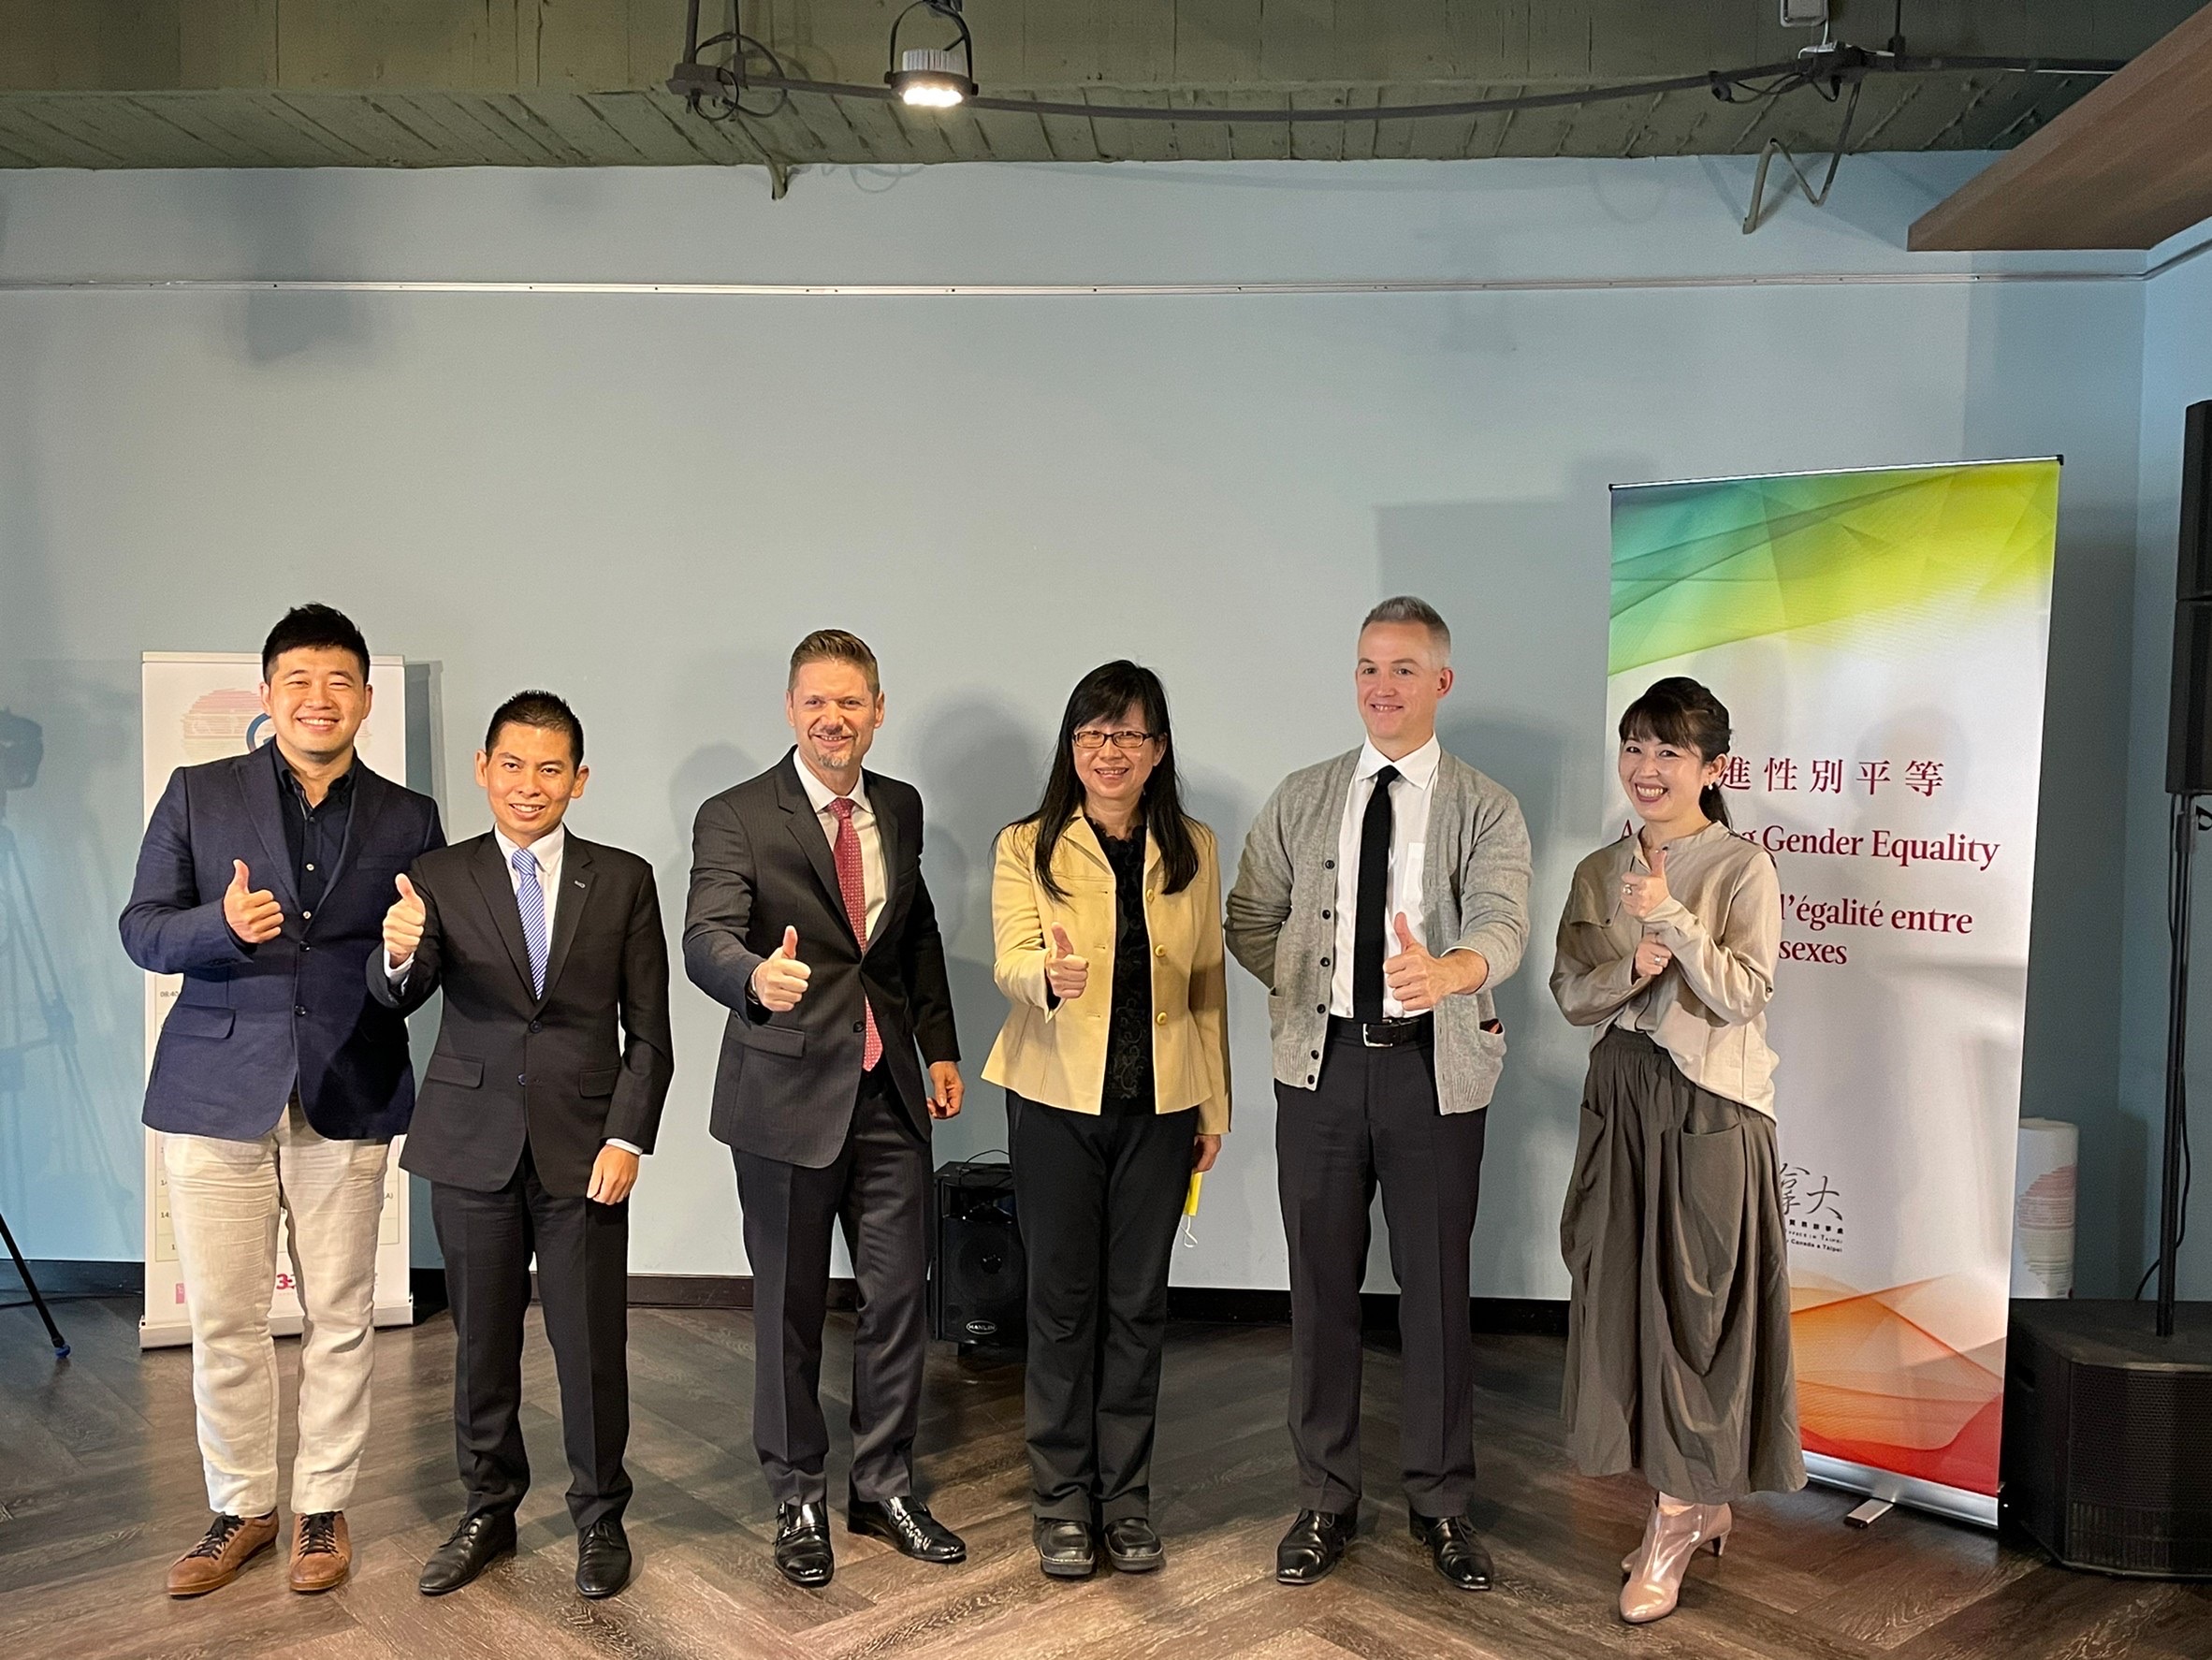 Đài Loan và Canada tổ chức hội thảo trực tuyến phân tích giới, mở ra quan hệ đối tác bình đẳng giới giữa Đài Loan và Canada. (Nguồn ảnh: Viện Hành chính Đài Loan)